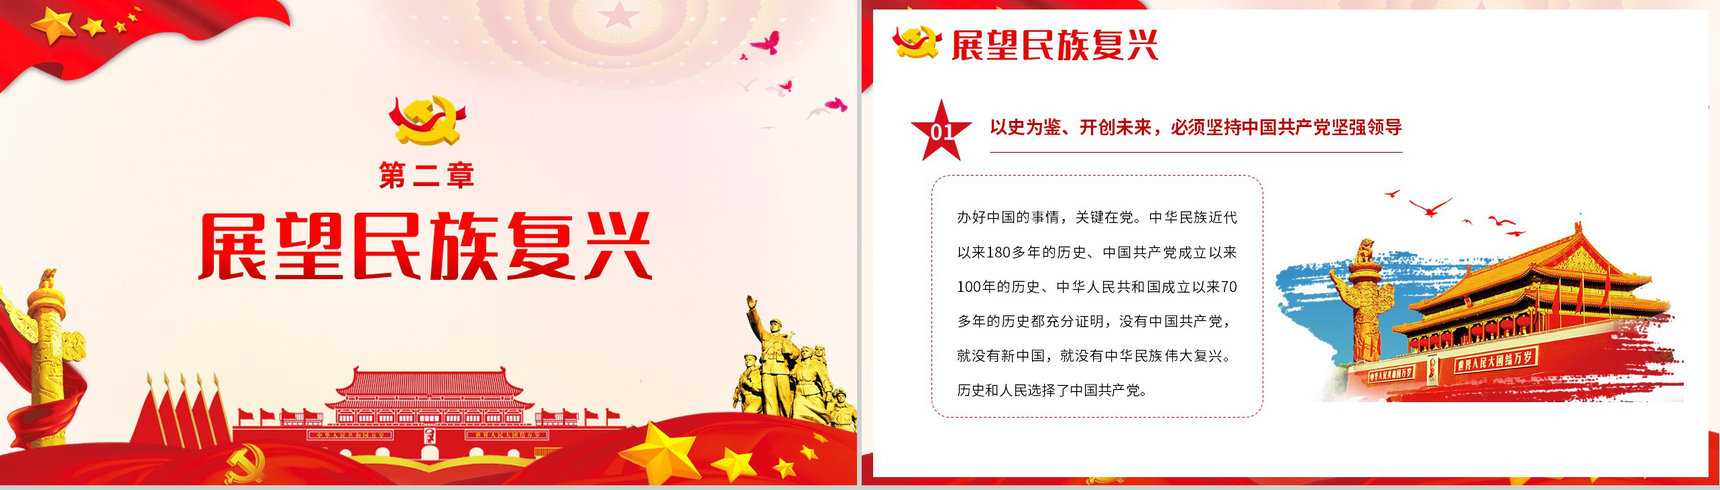 党政风庆祝中国共产党成立一百周年大会的总要讲话PPT模板-5